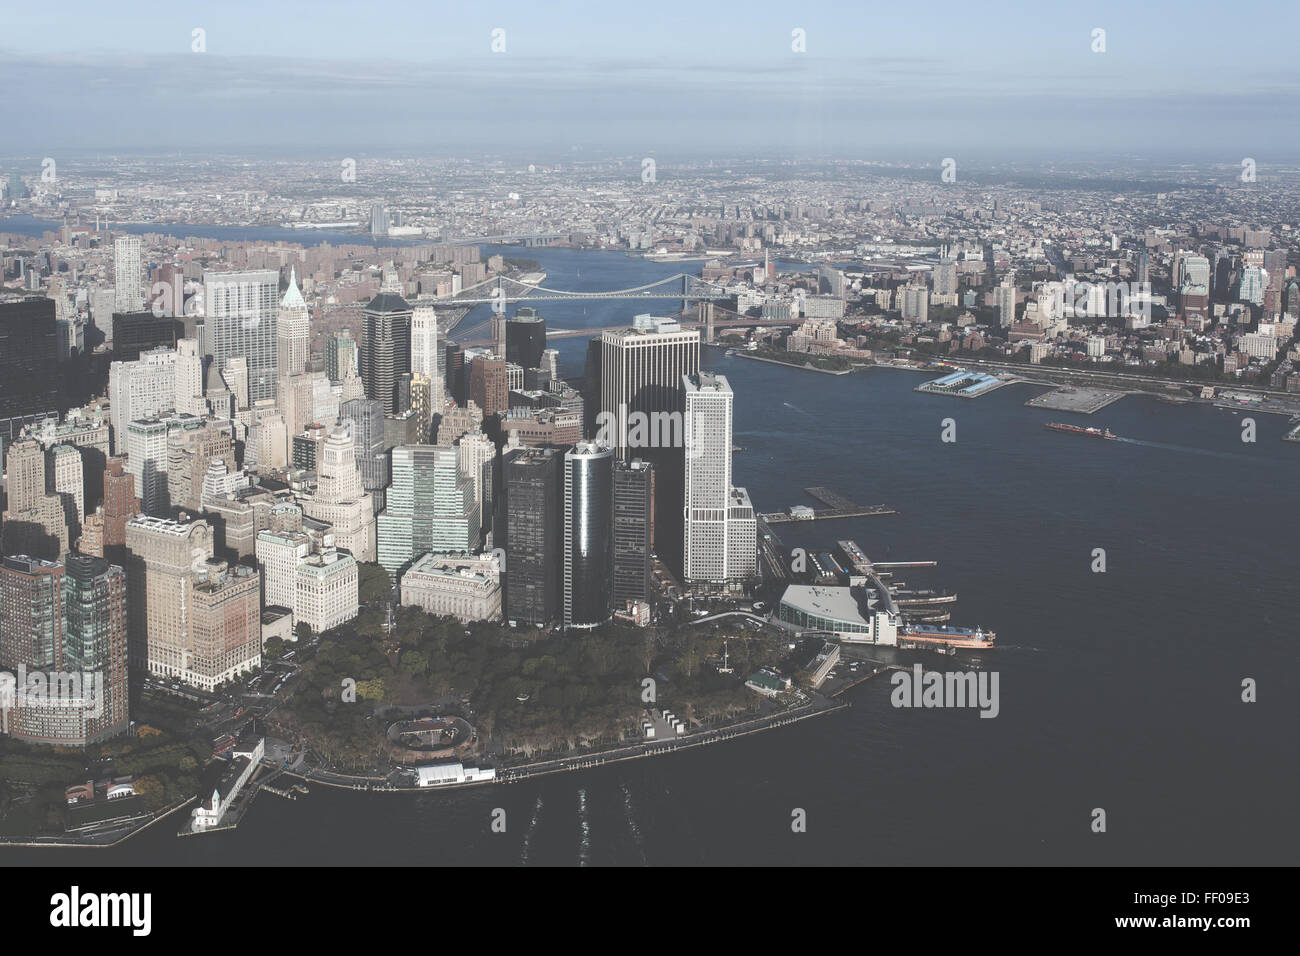 Vue aérienne de la ville avec des gratte-ciel Vue aérienne de la ville avec des gratte-ciel Banque D'Images